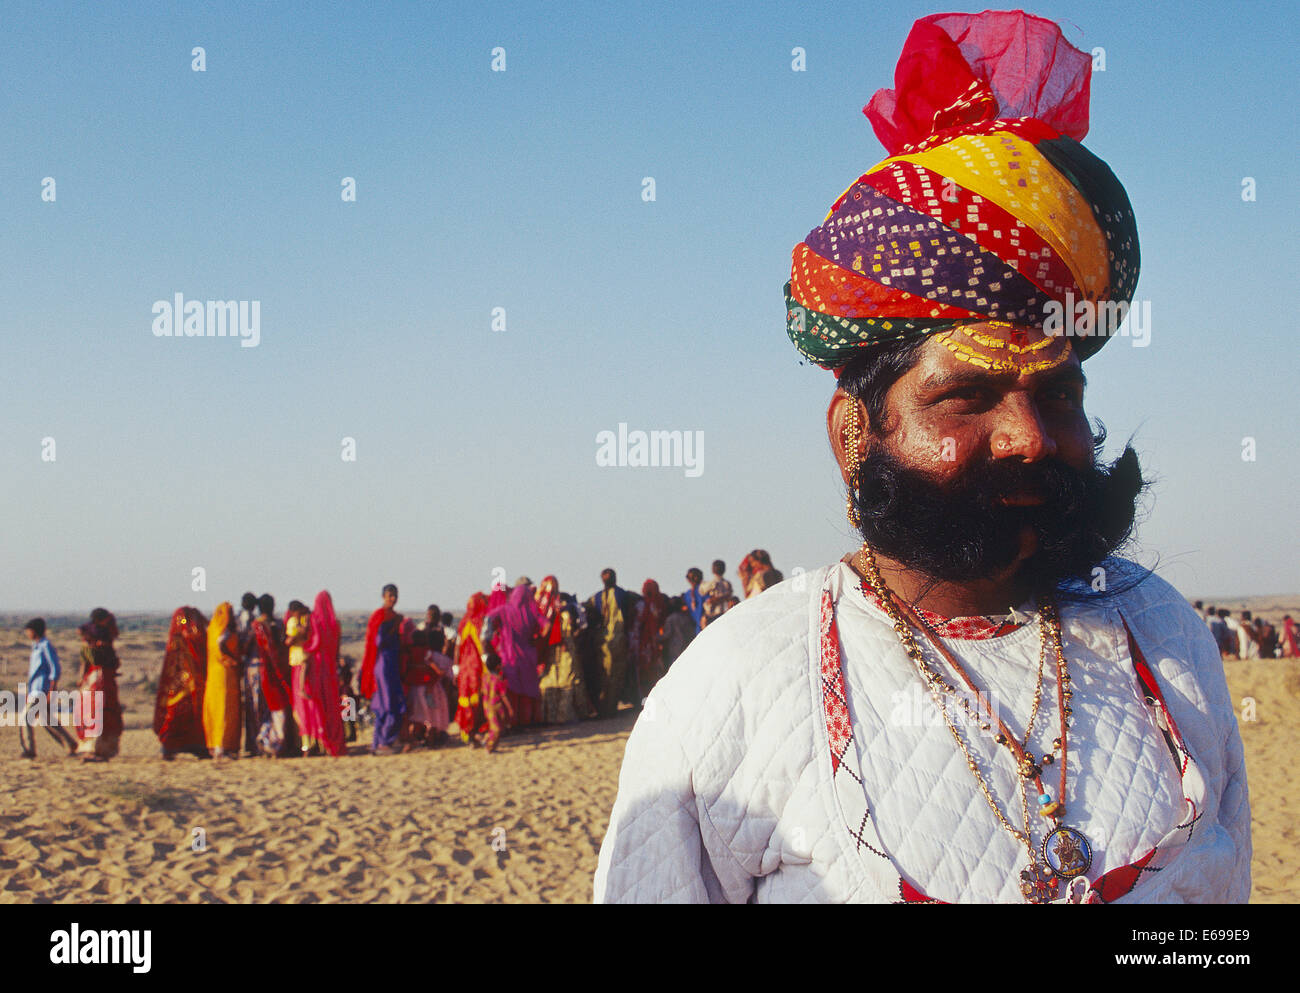 L'homme hindou habillé de façon traditionnelle. Il appartient à la classe de Rajput. Dans l'arrière-plan, les femmes sont visibles (Inde) Banque D'Images